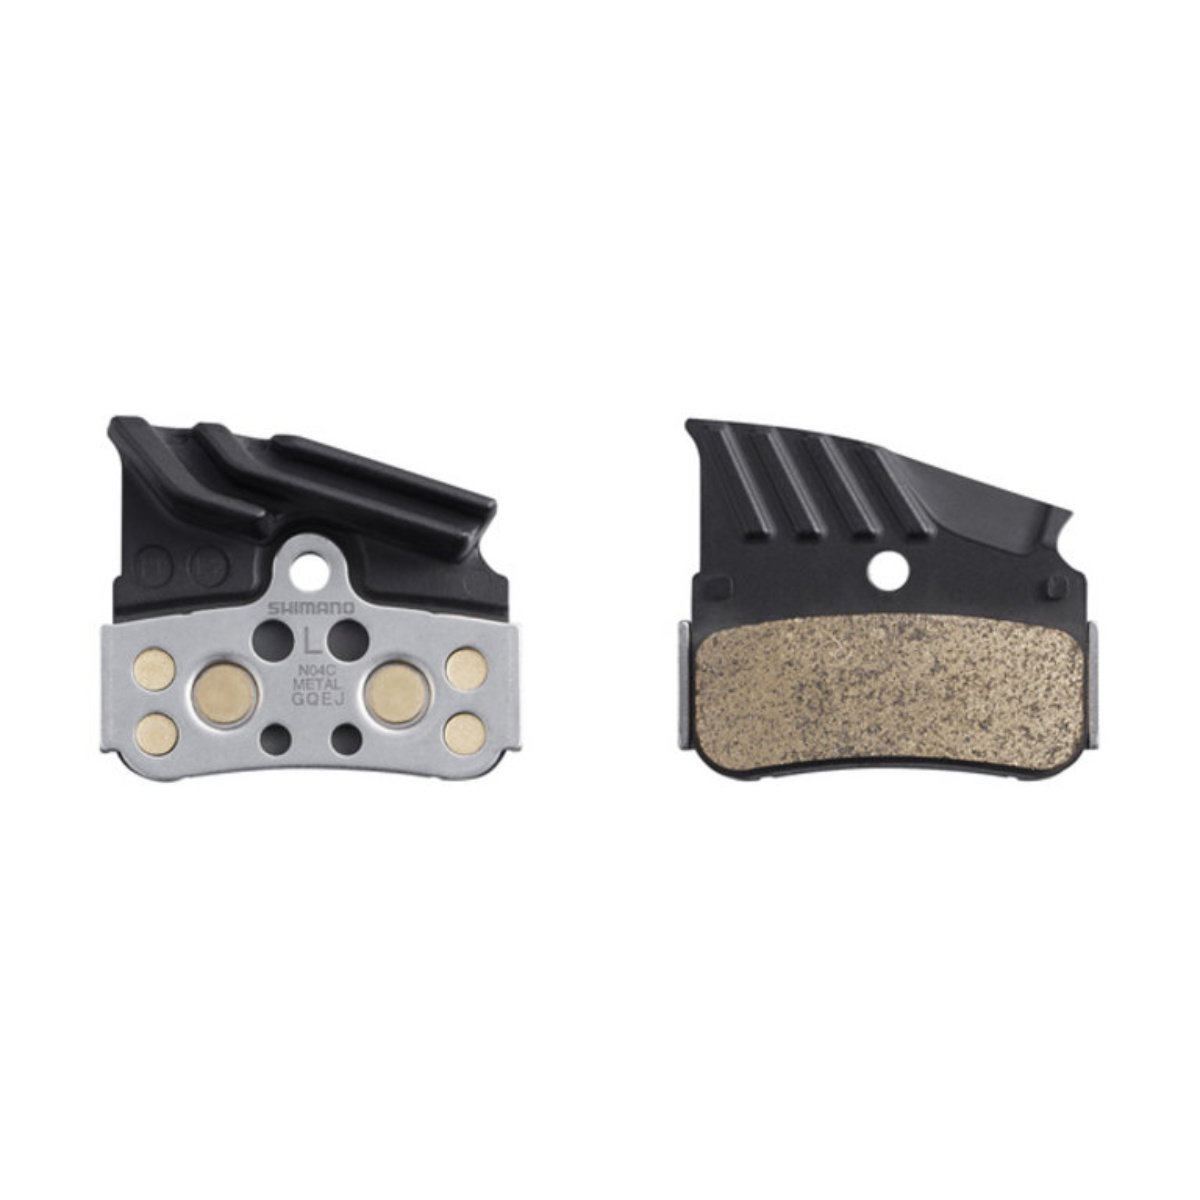 Shimano N04C Metallic Brake Pads with Cooling Fins